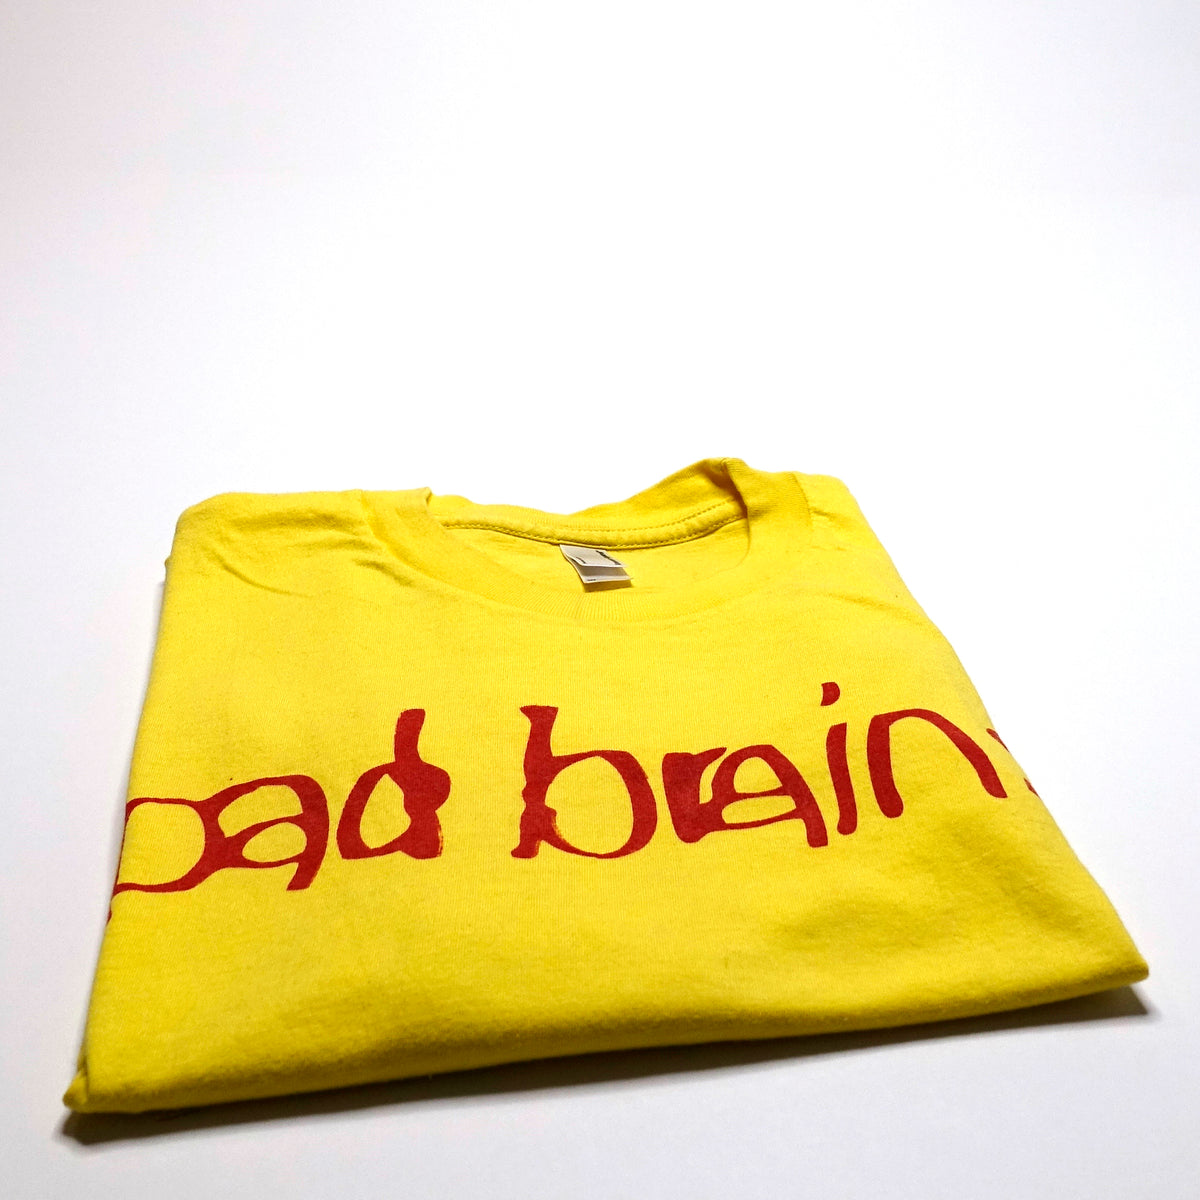 Bad Brains - Rior DC Capitol Bolt 80's Tour Large Shirt